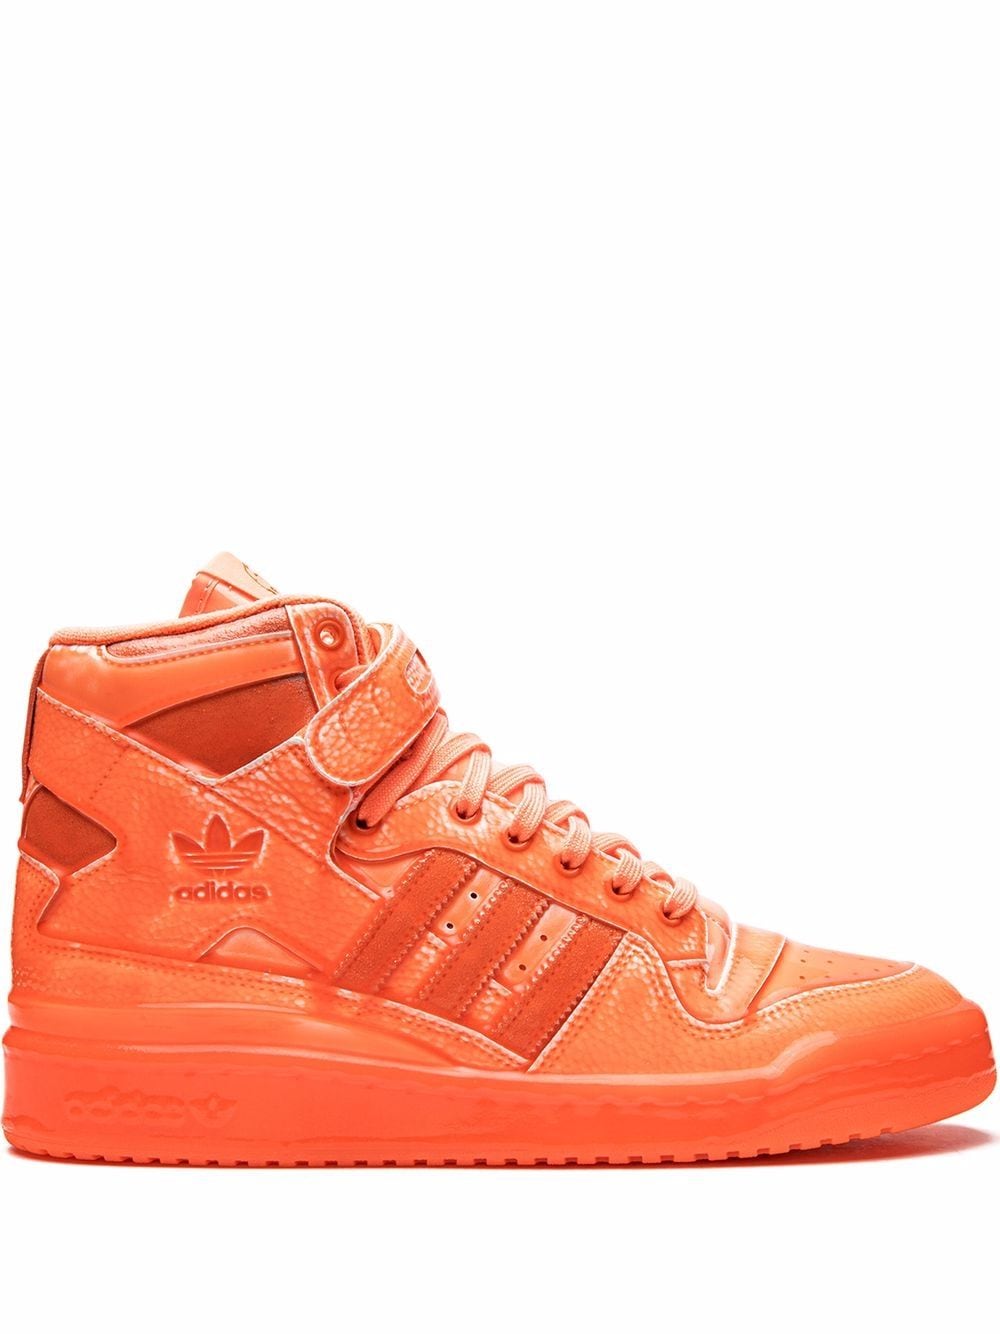 adidas x Jeremy Scott Forum Hi Sneakers - Orange von adidas